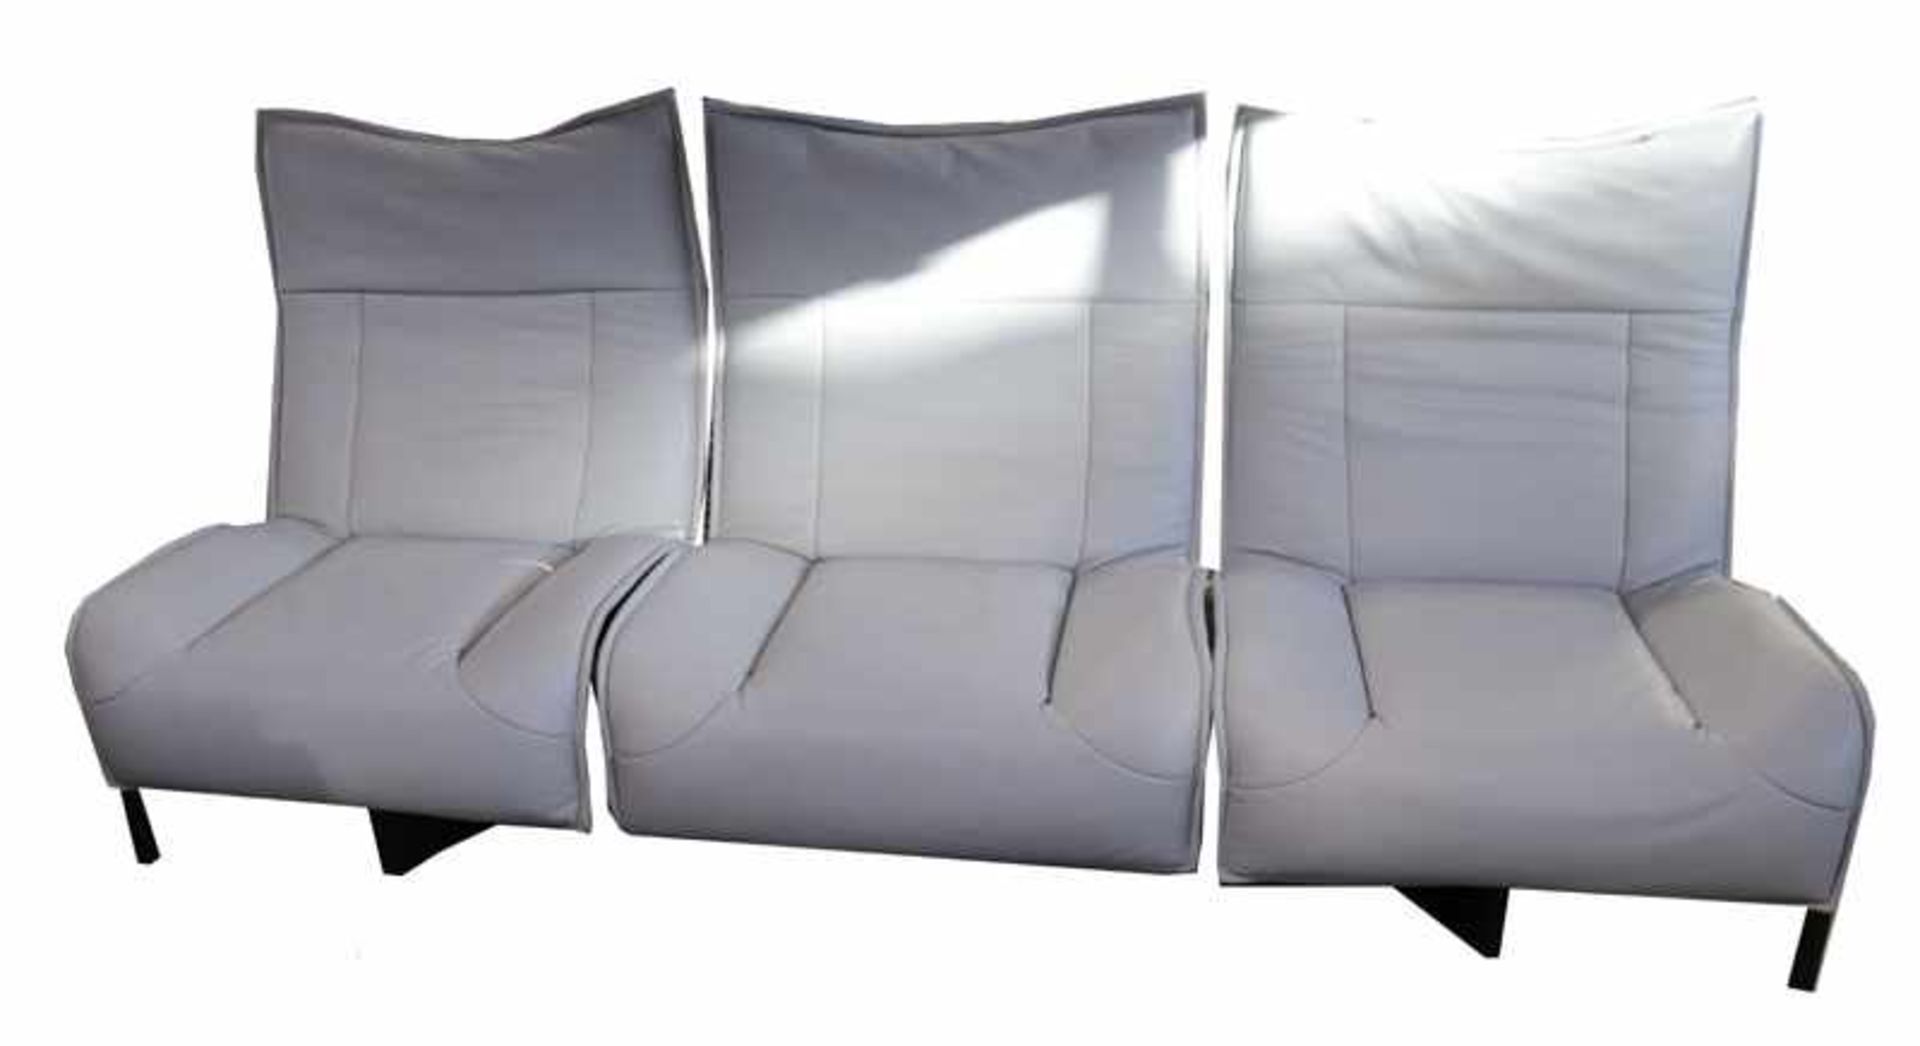 Designer Couch, 3-Sitzer mit grauem Leder bezogen, H 112 cm, B 254 cm, T 87 cm, Gebrauchsspuren,